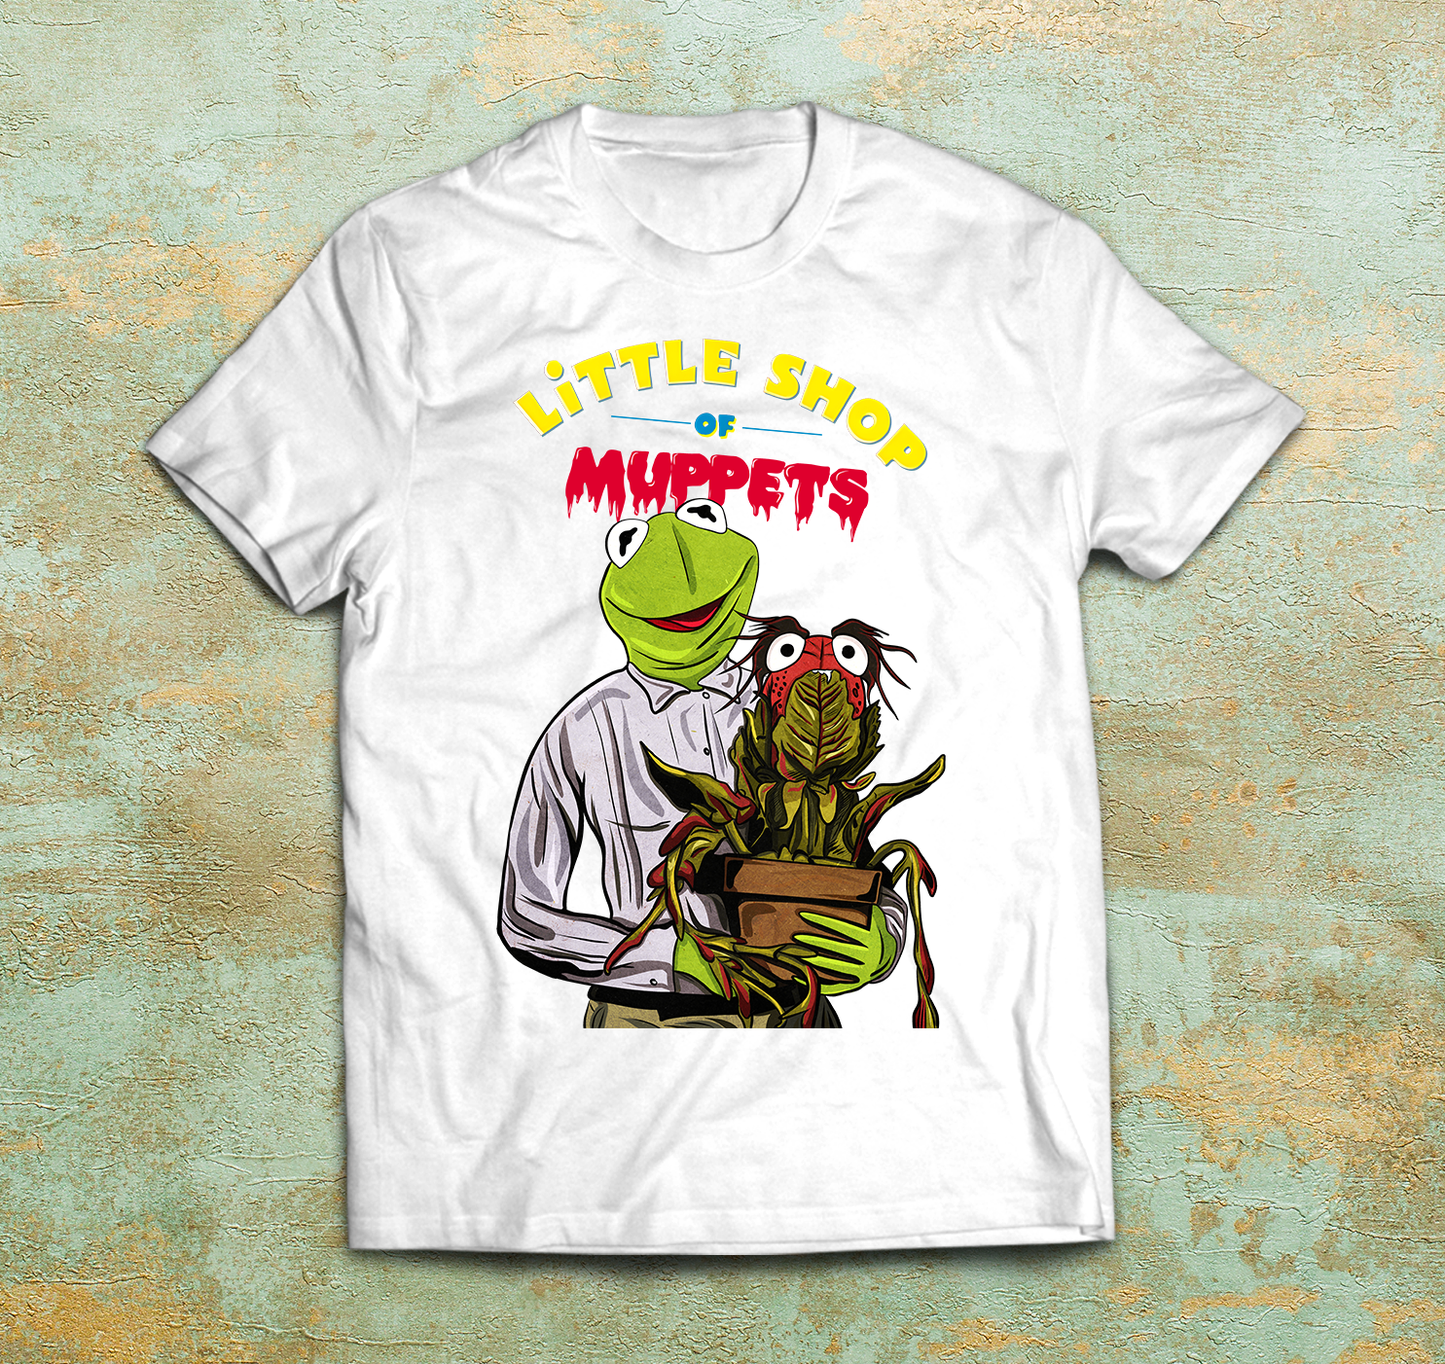 Little Shop of Muppets Parody Shirt